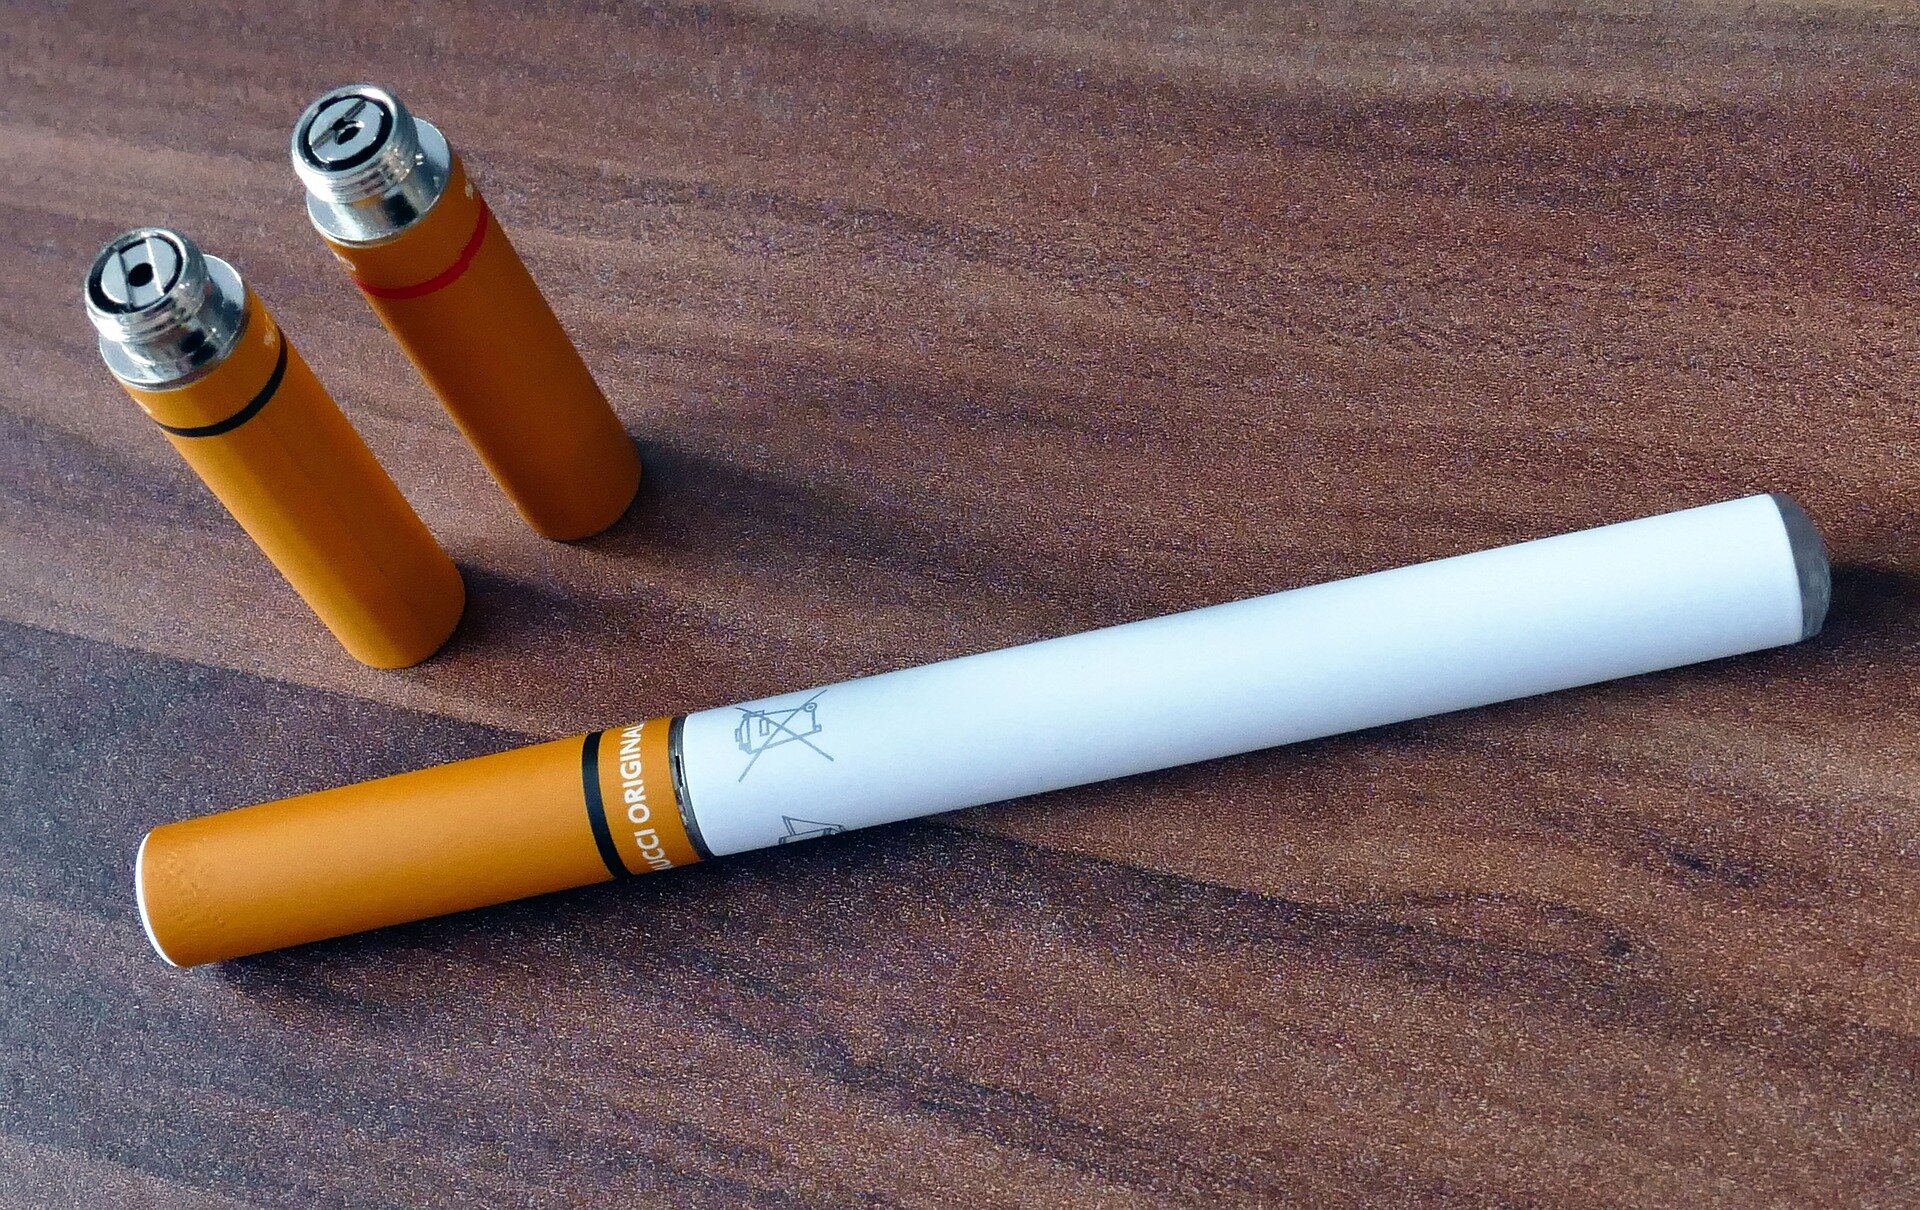 Le marketing de la nicotine cible toujours les adolescents comme il y a plusieurs décennies, selon un chercheur